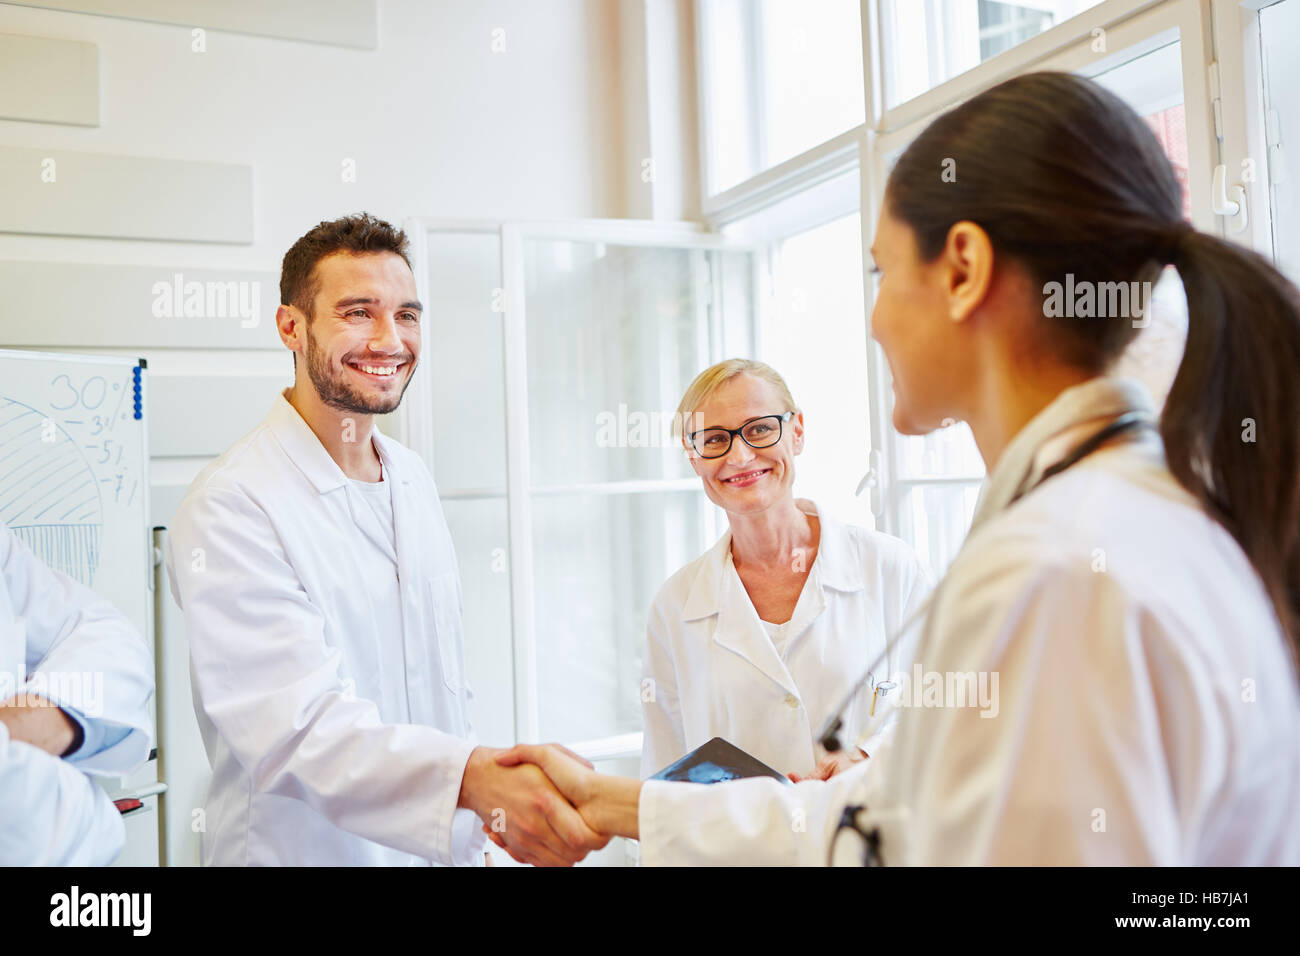 Handshake zwischen den Ärzten als Herzlichen Glückwunsch Geste Stockfoto